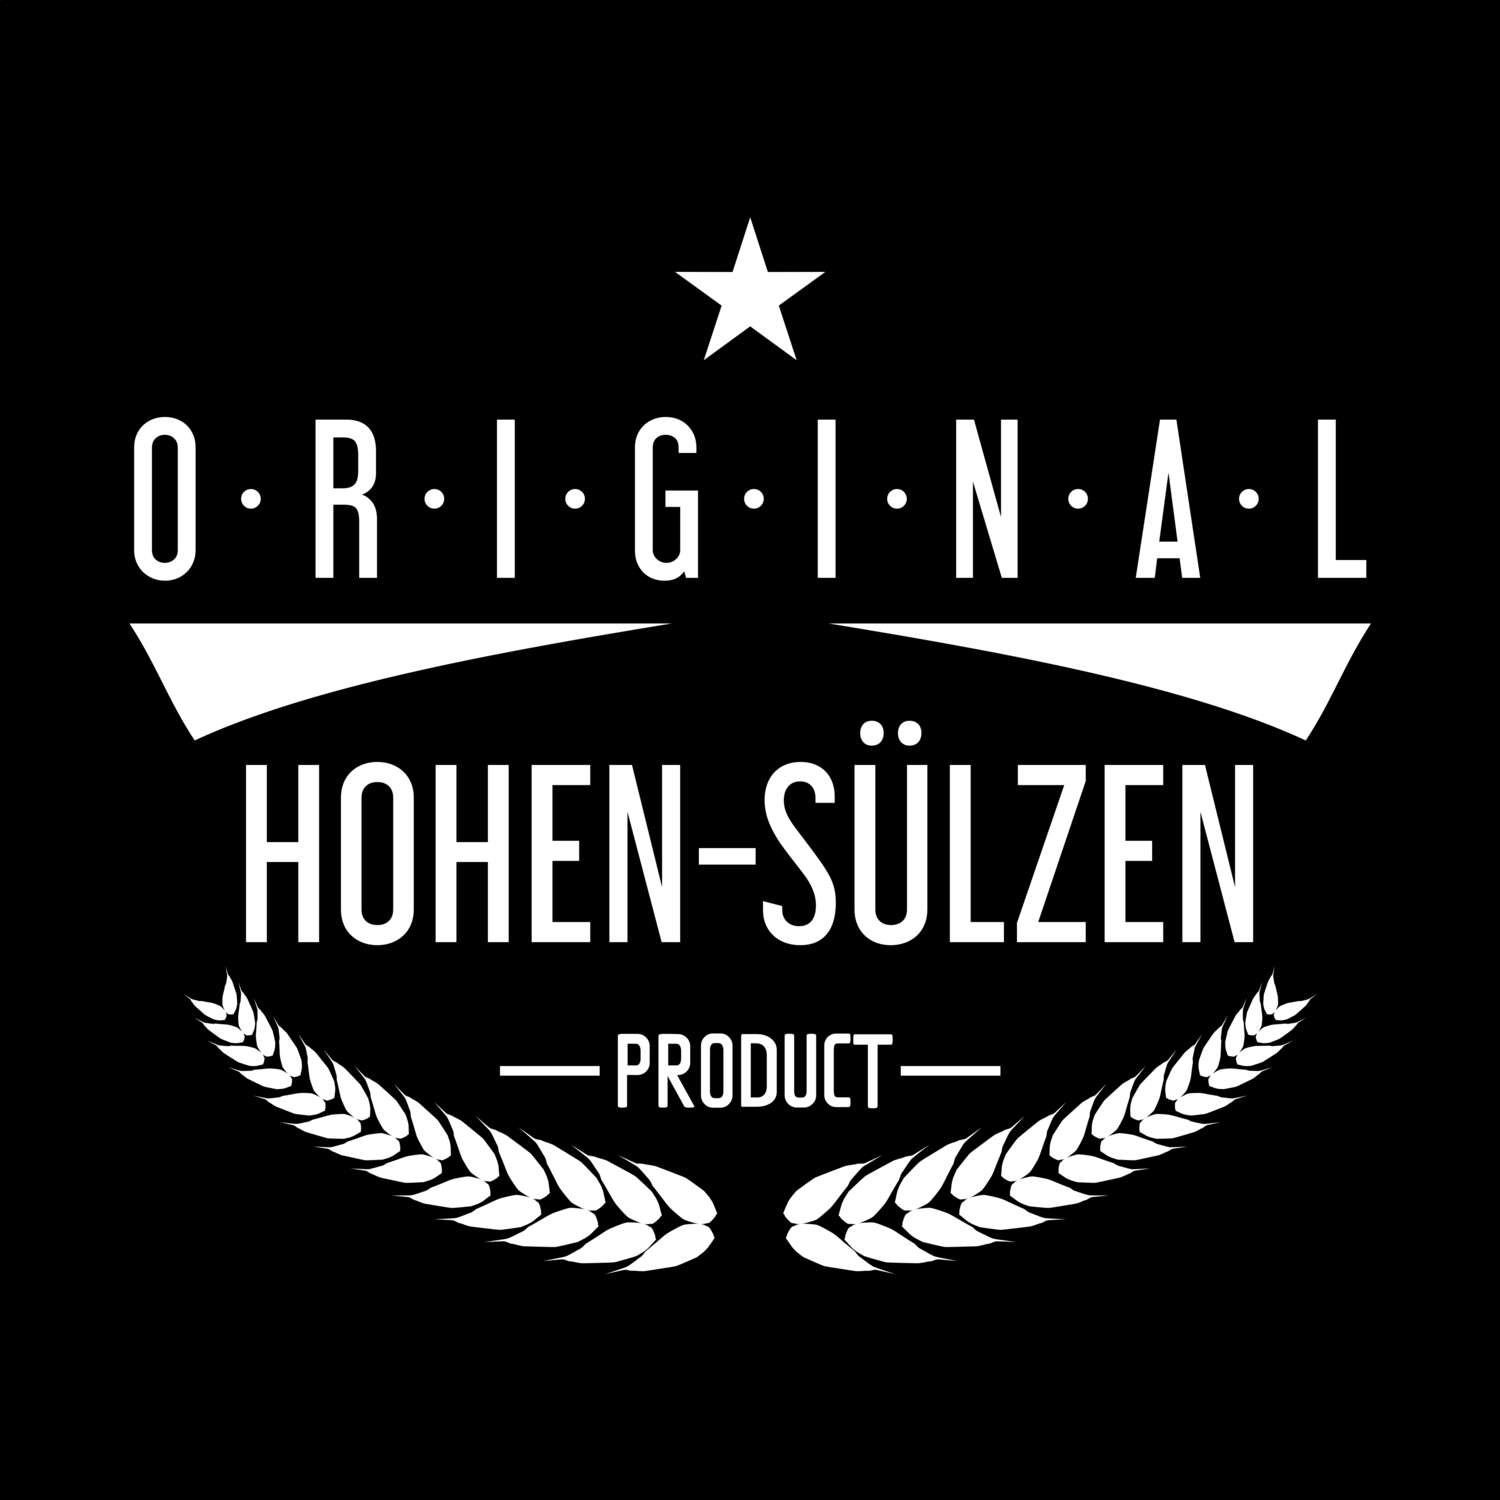 Hohen-Sülzen T-Shirt »Original Product«